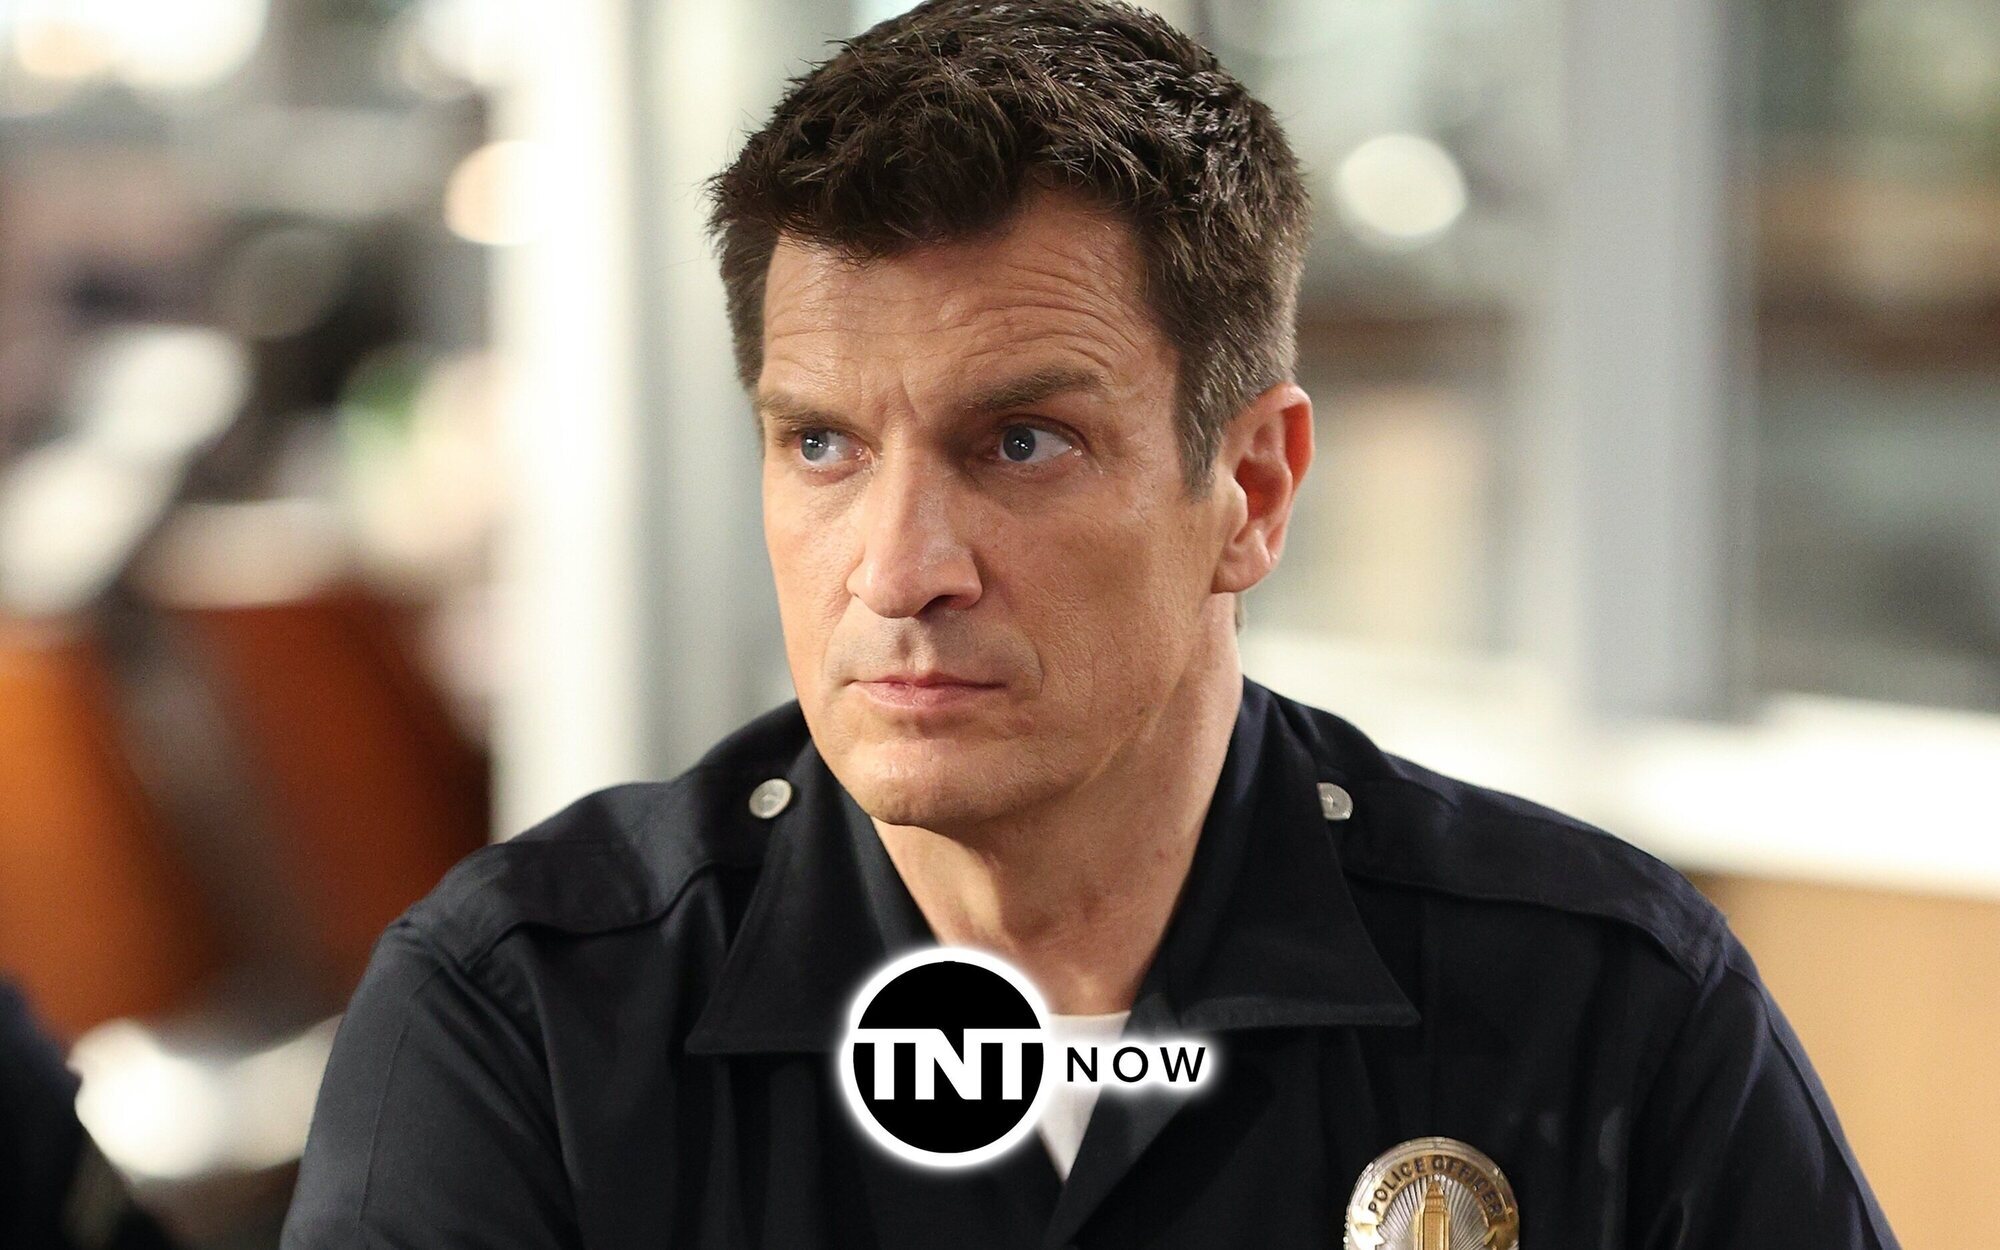 TNT Now se llena de adrenalina y acción con las nuevas temporadas de 'The Rookie', 'Chicago Med' y 'FBI'